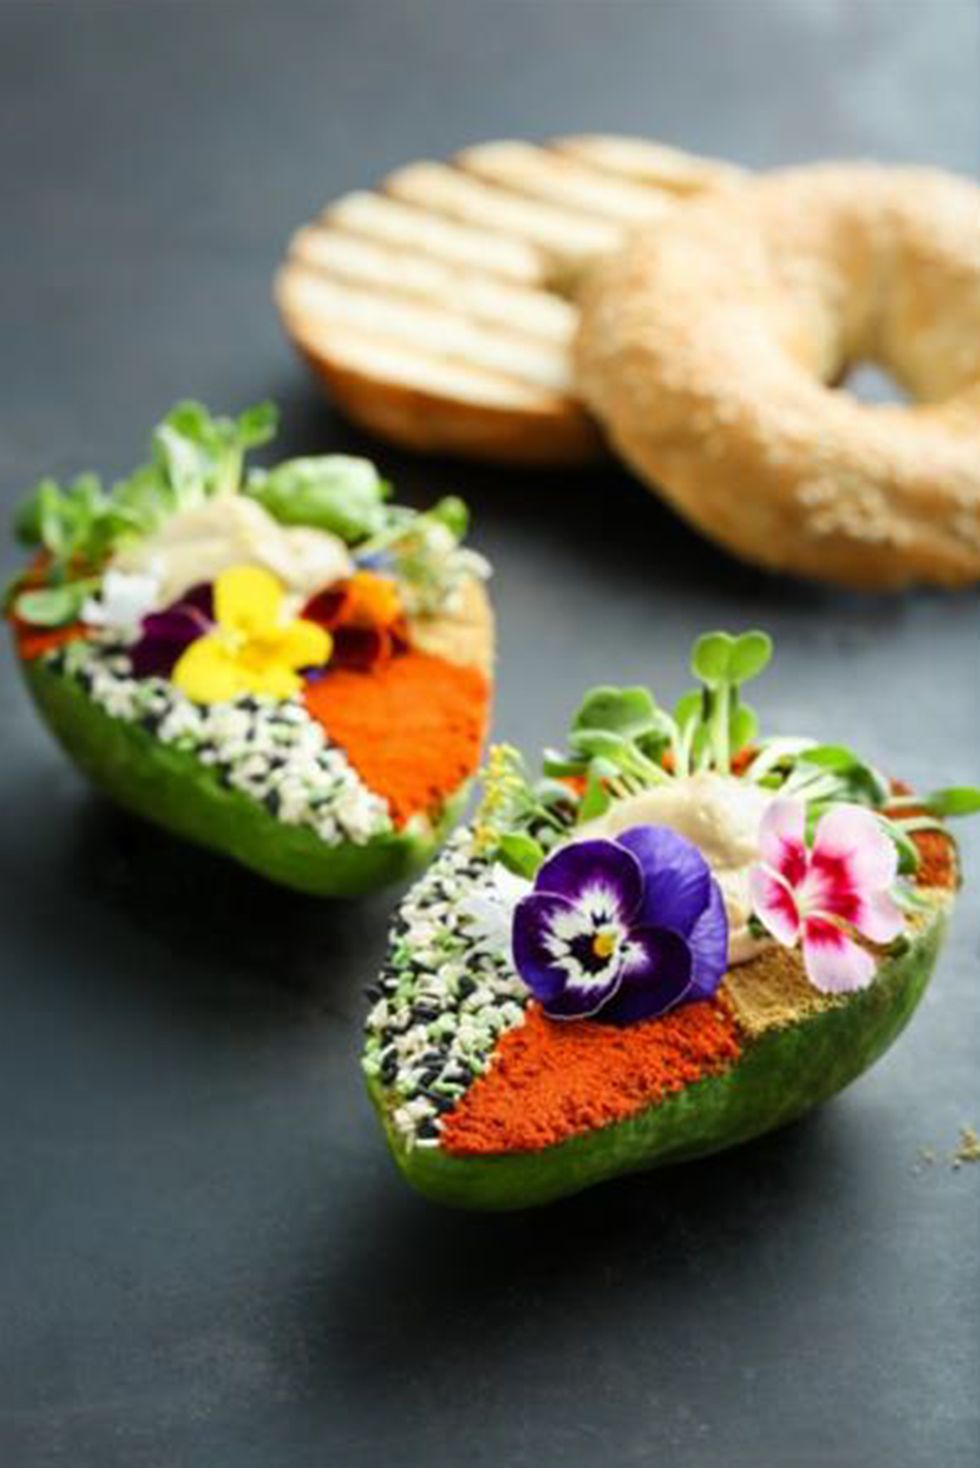 avo garden aguacate, hummus, especias, brotes verdes y flores, servidos con pan de pita plato del restaurante the avocado show, de madrid